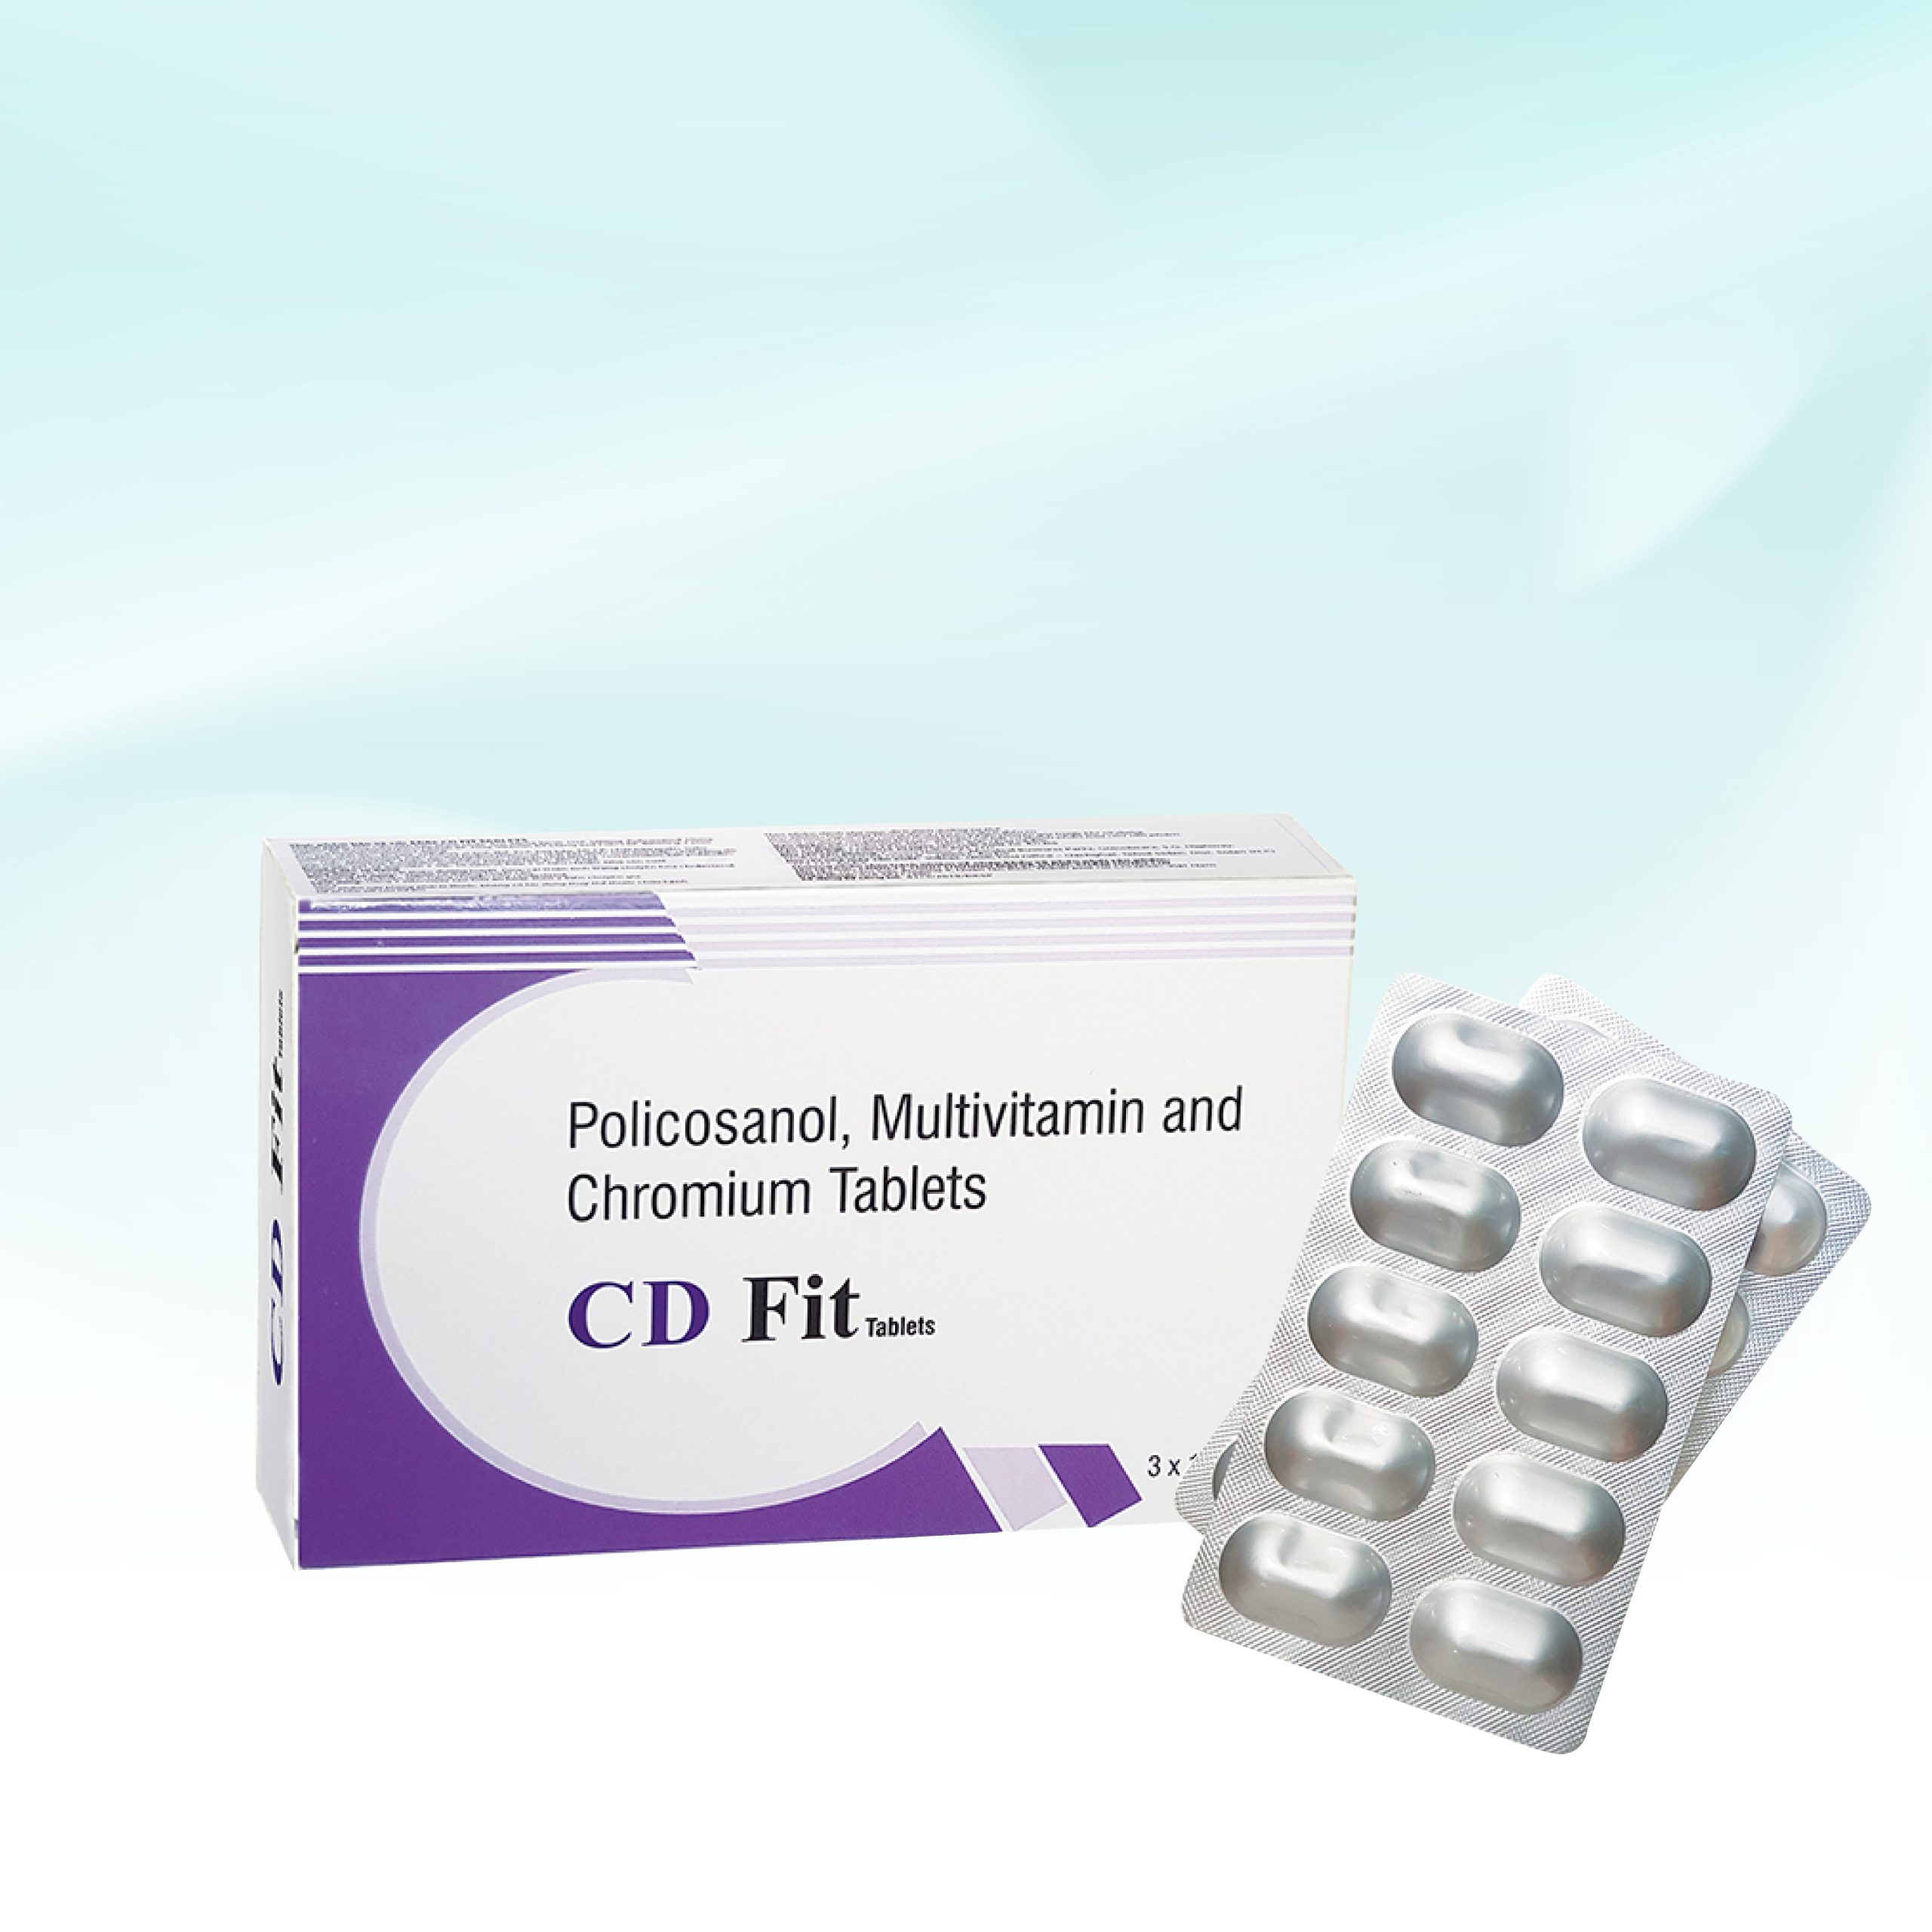 Thực Phẩm Bảo Vệ Sức Khỏe CD FIT Tablets